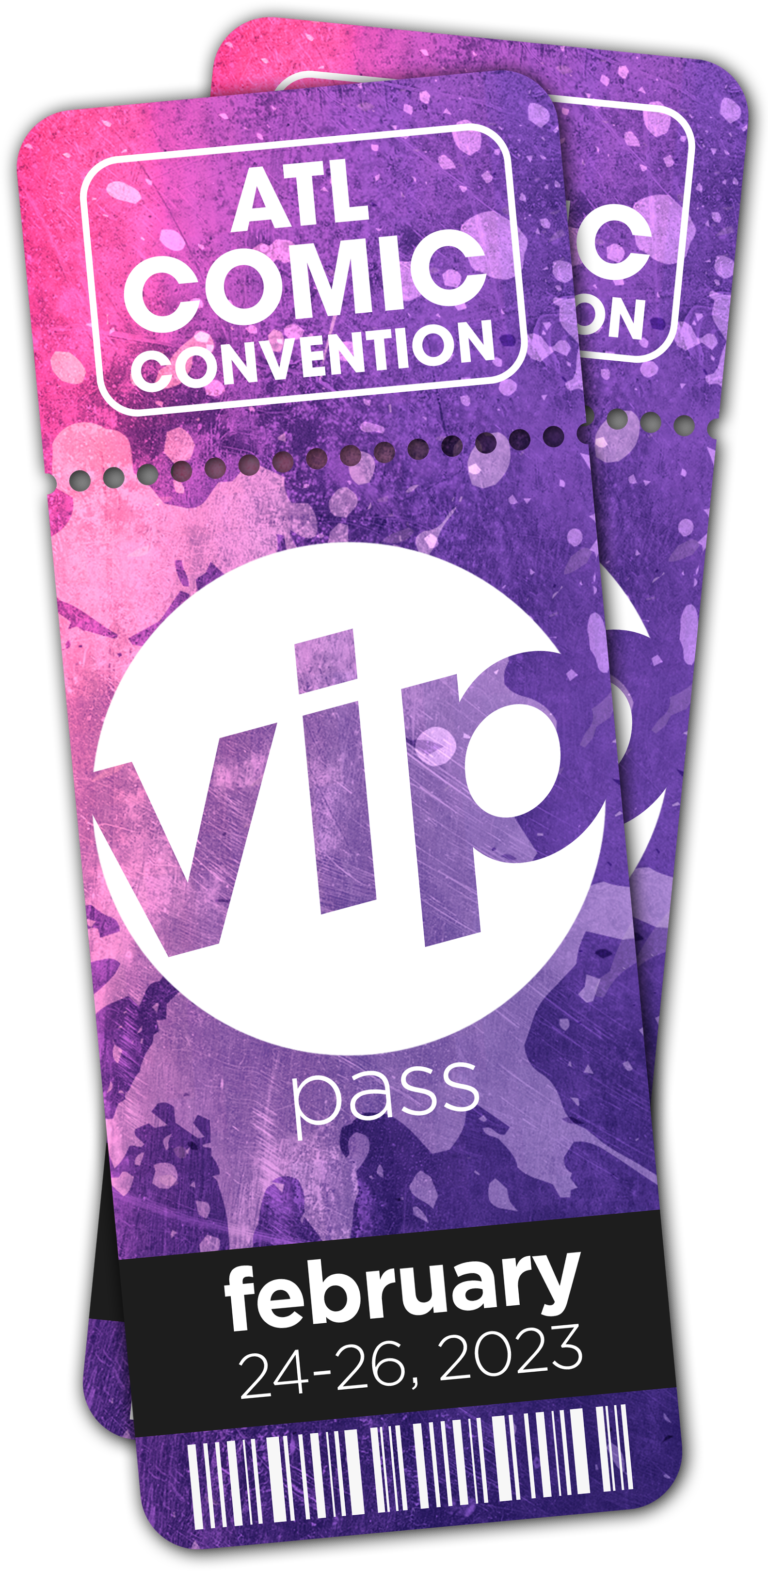 VIP Pass